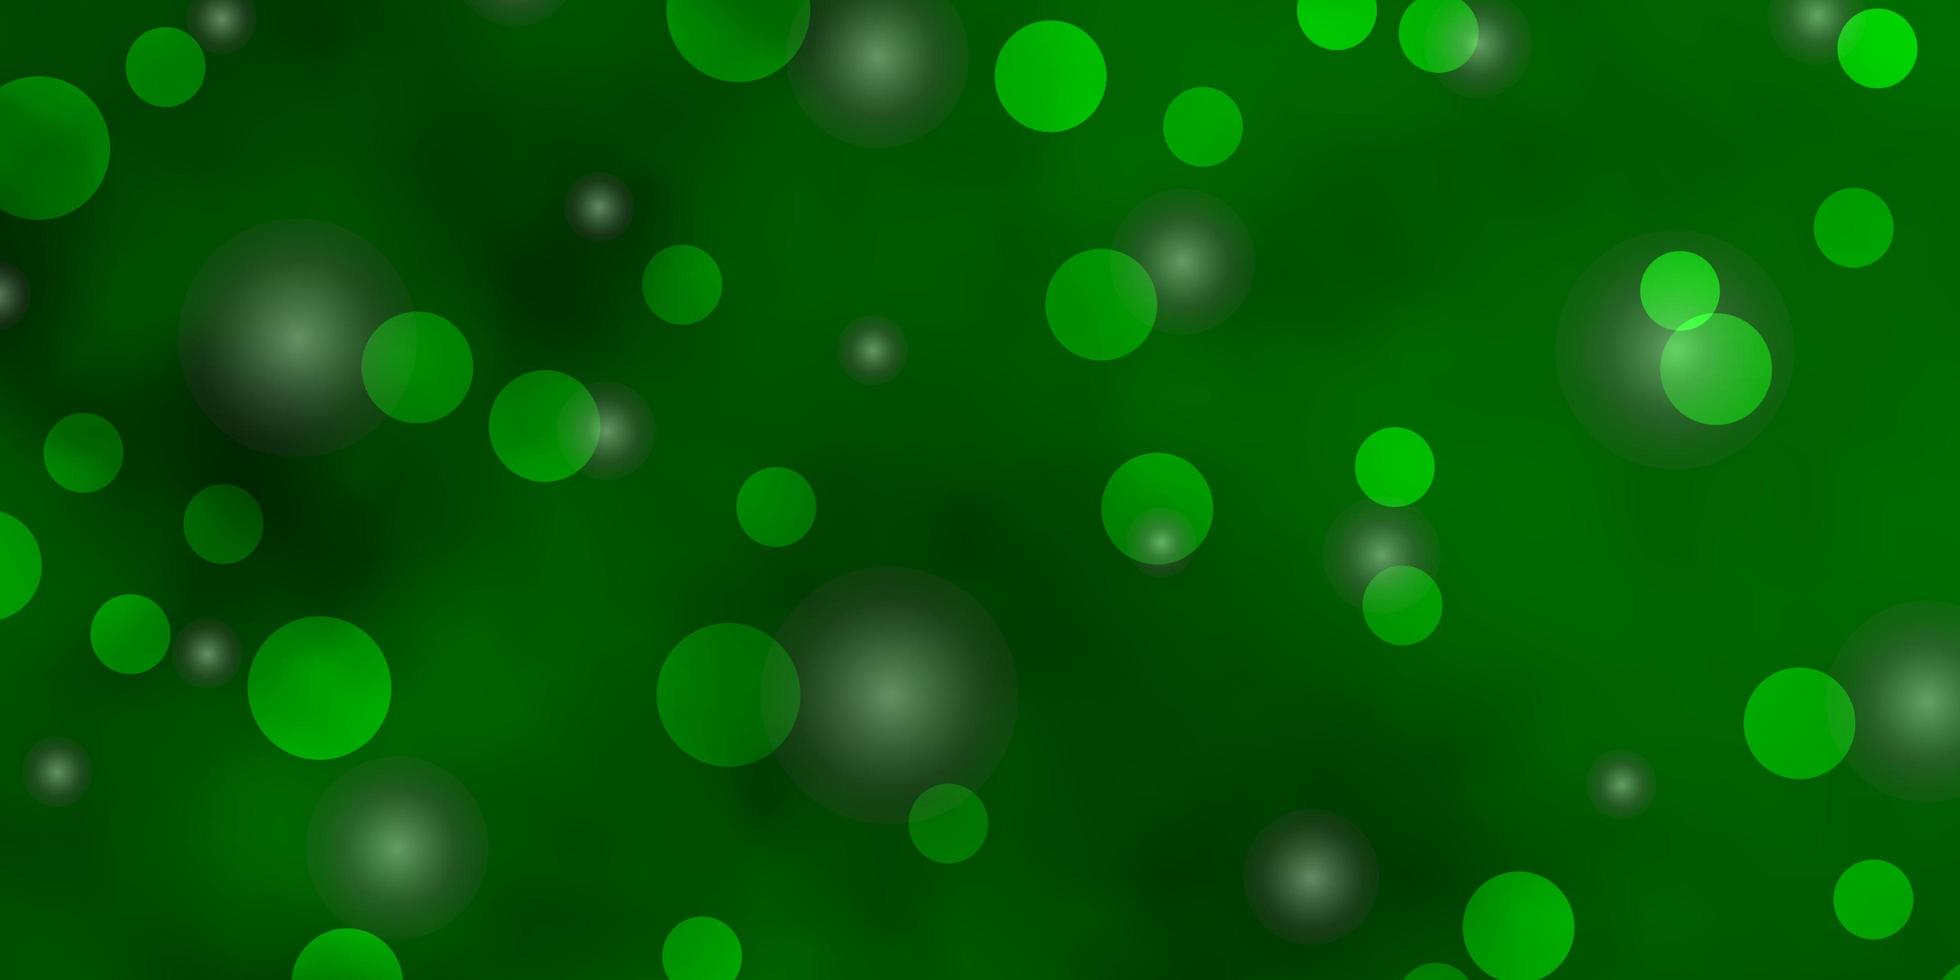 textura de vector verde claro con círculos, estrellas. discos de colores, estrellas sobre fondo degradado simple. diseño de carteles, pancartas.